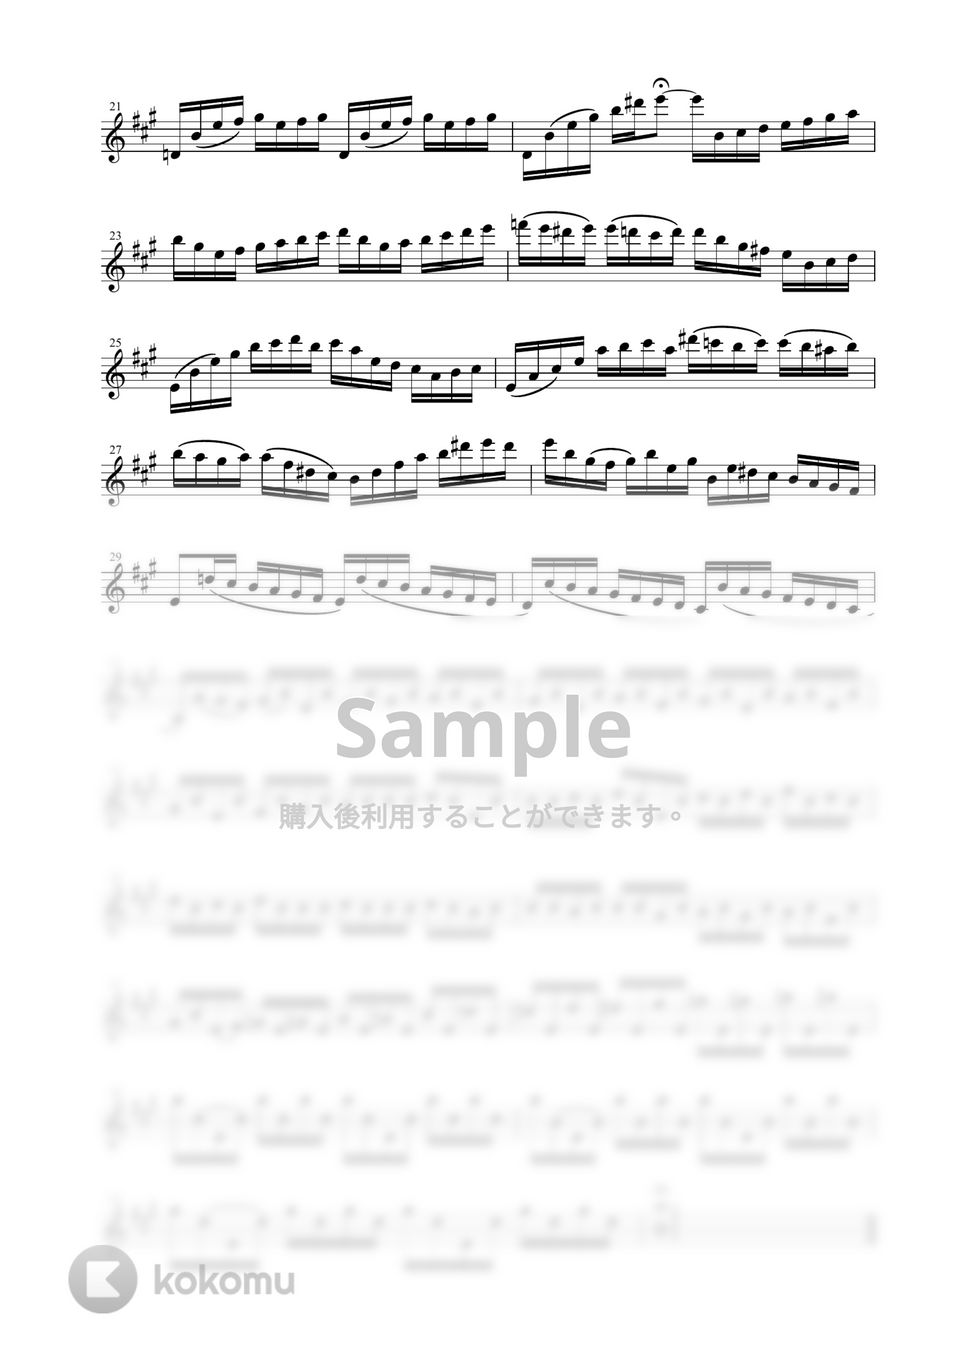 J.S.バッハ - チェロ組曲 より 第１番 プレリュード BWV1007 (ソプラノサックス独奏 / 無伴奏) by Zoe